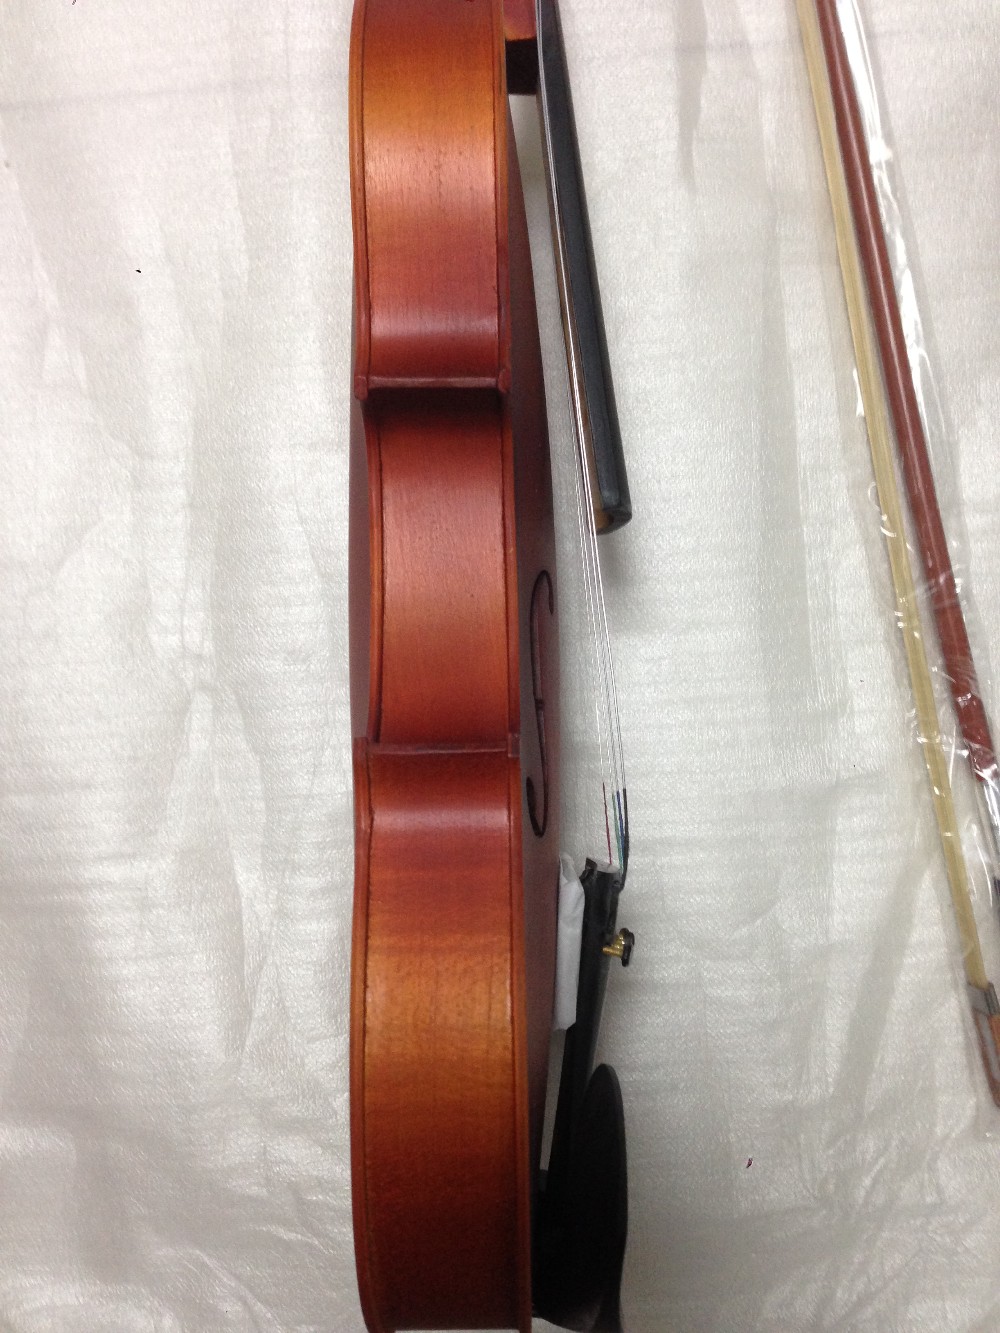 ハイエンドアンティークバイオリンで合板トップマット仕上げ、4/4バイオリン、学生バイオリン仕入れ・メーカー・工場